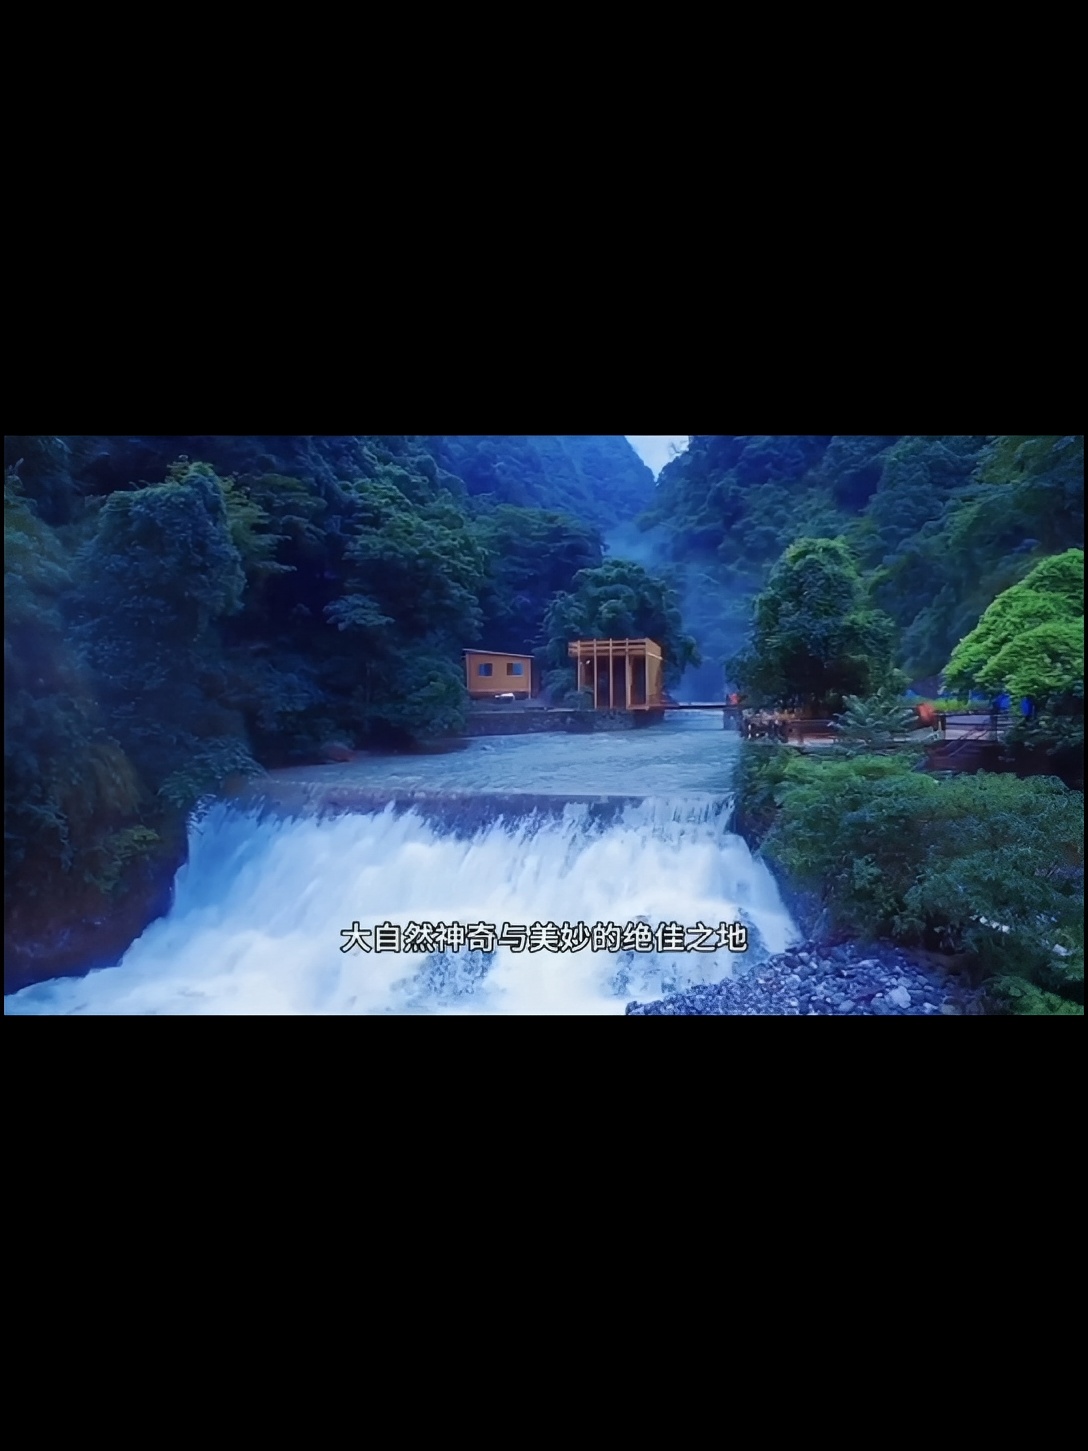 虹霓瀑布，位于山西平顺县境内，